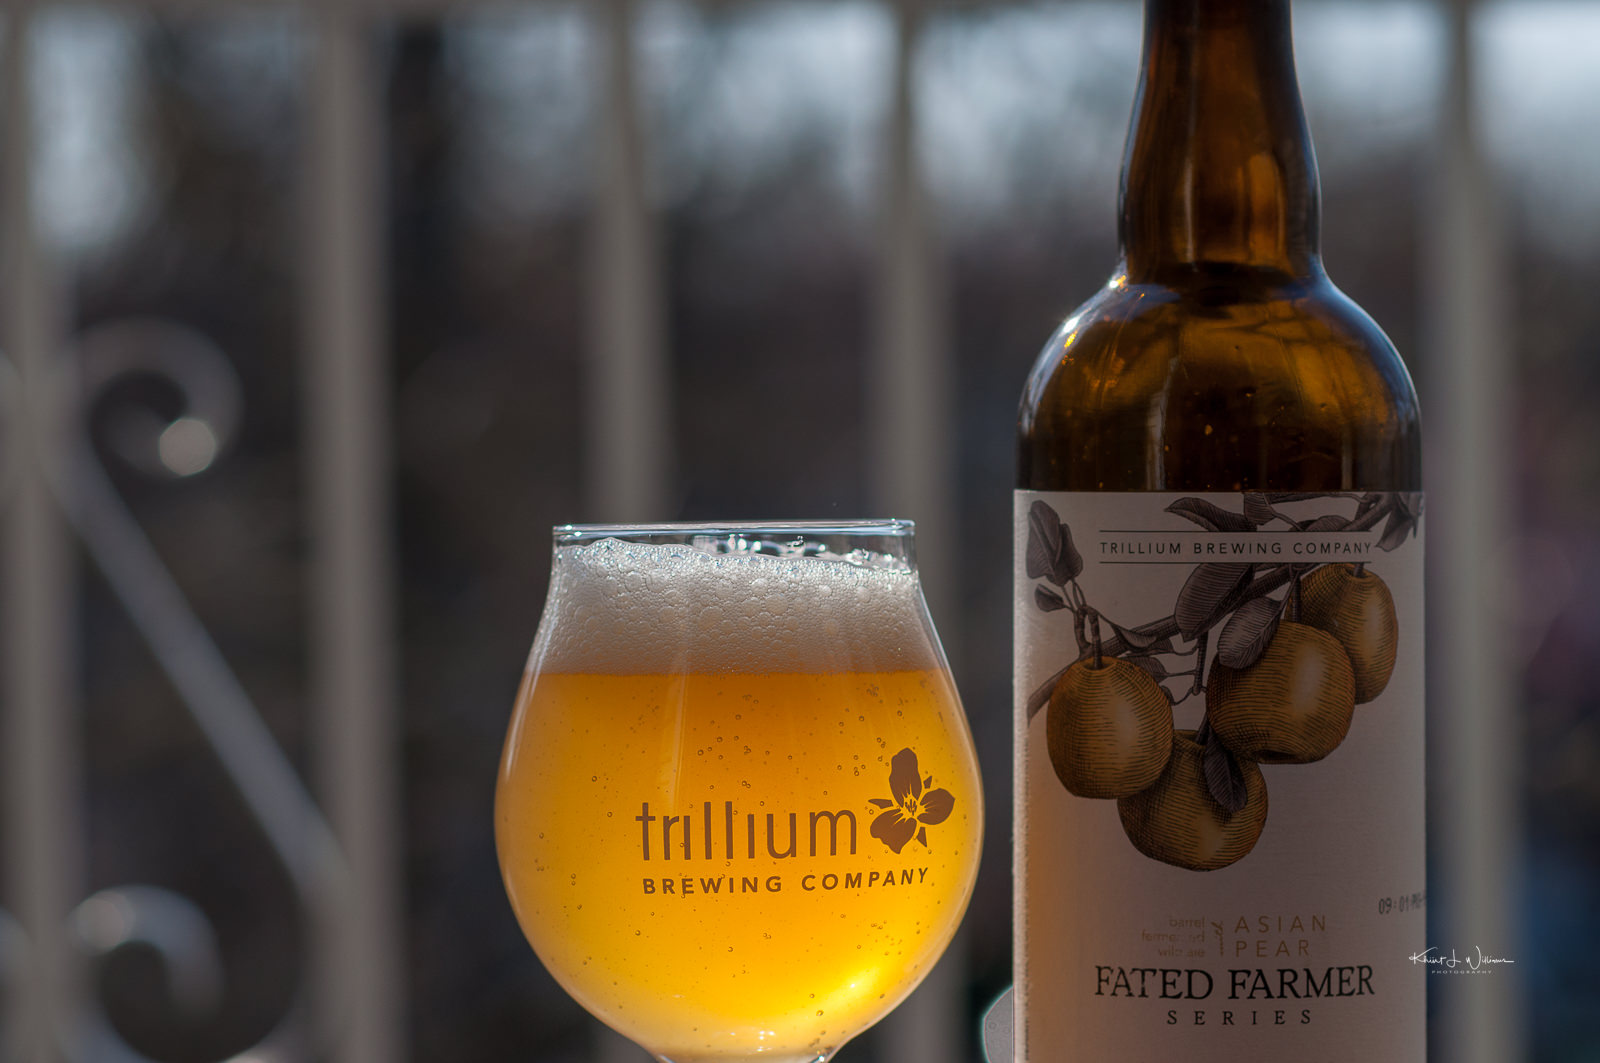 Trillium Brewing Company's Fated Farmer: Asian Pear